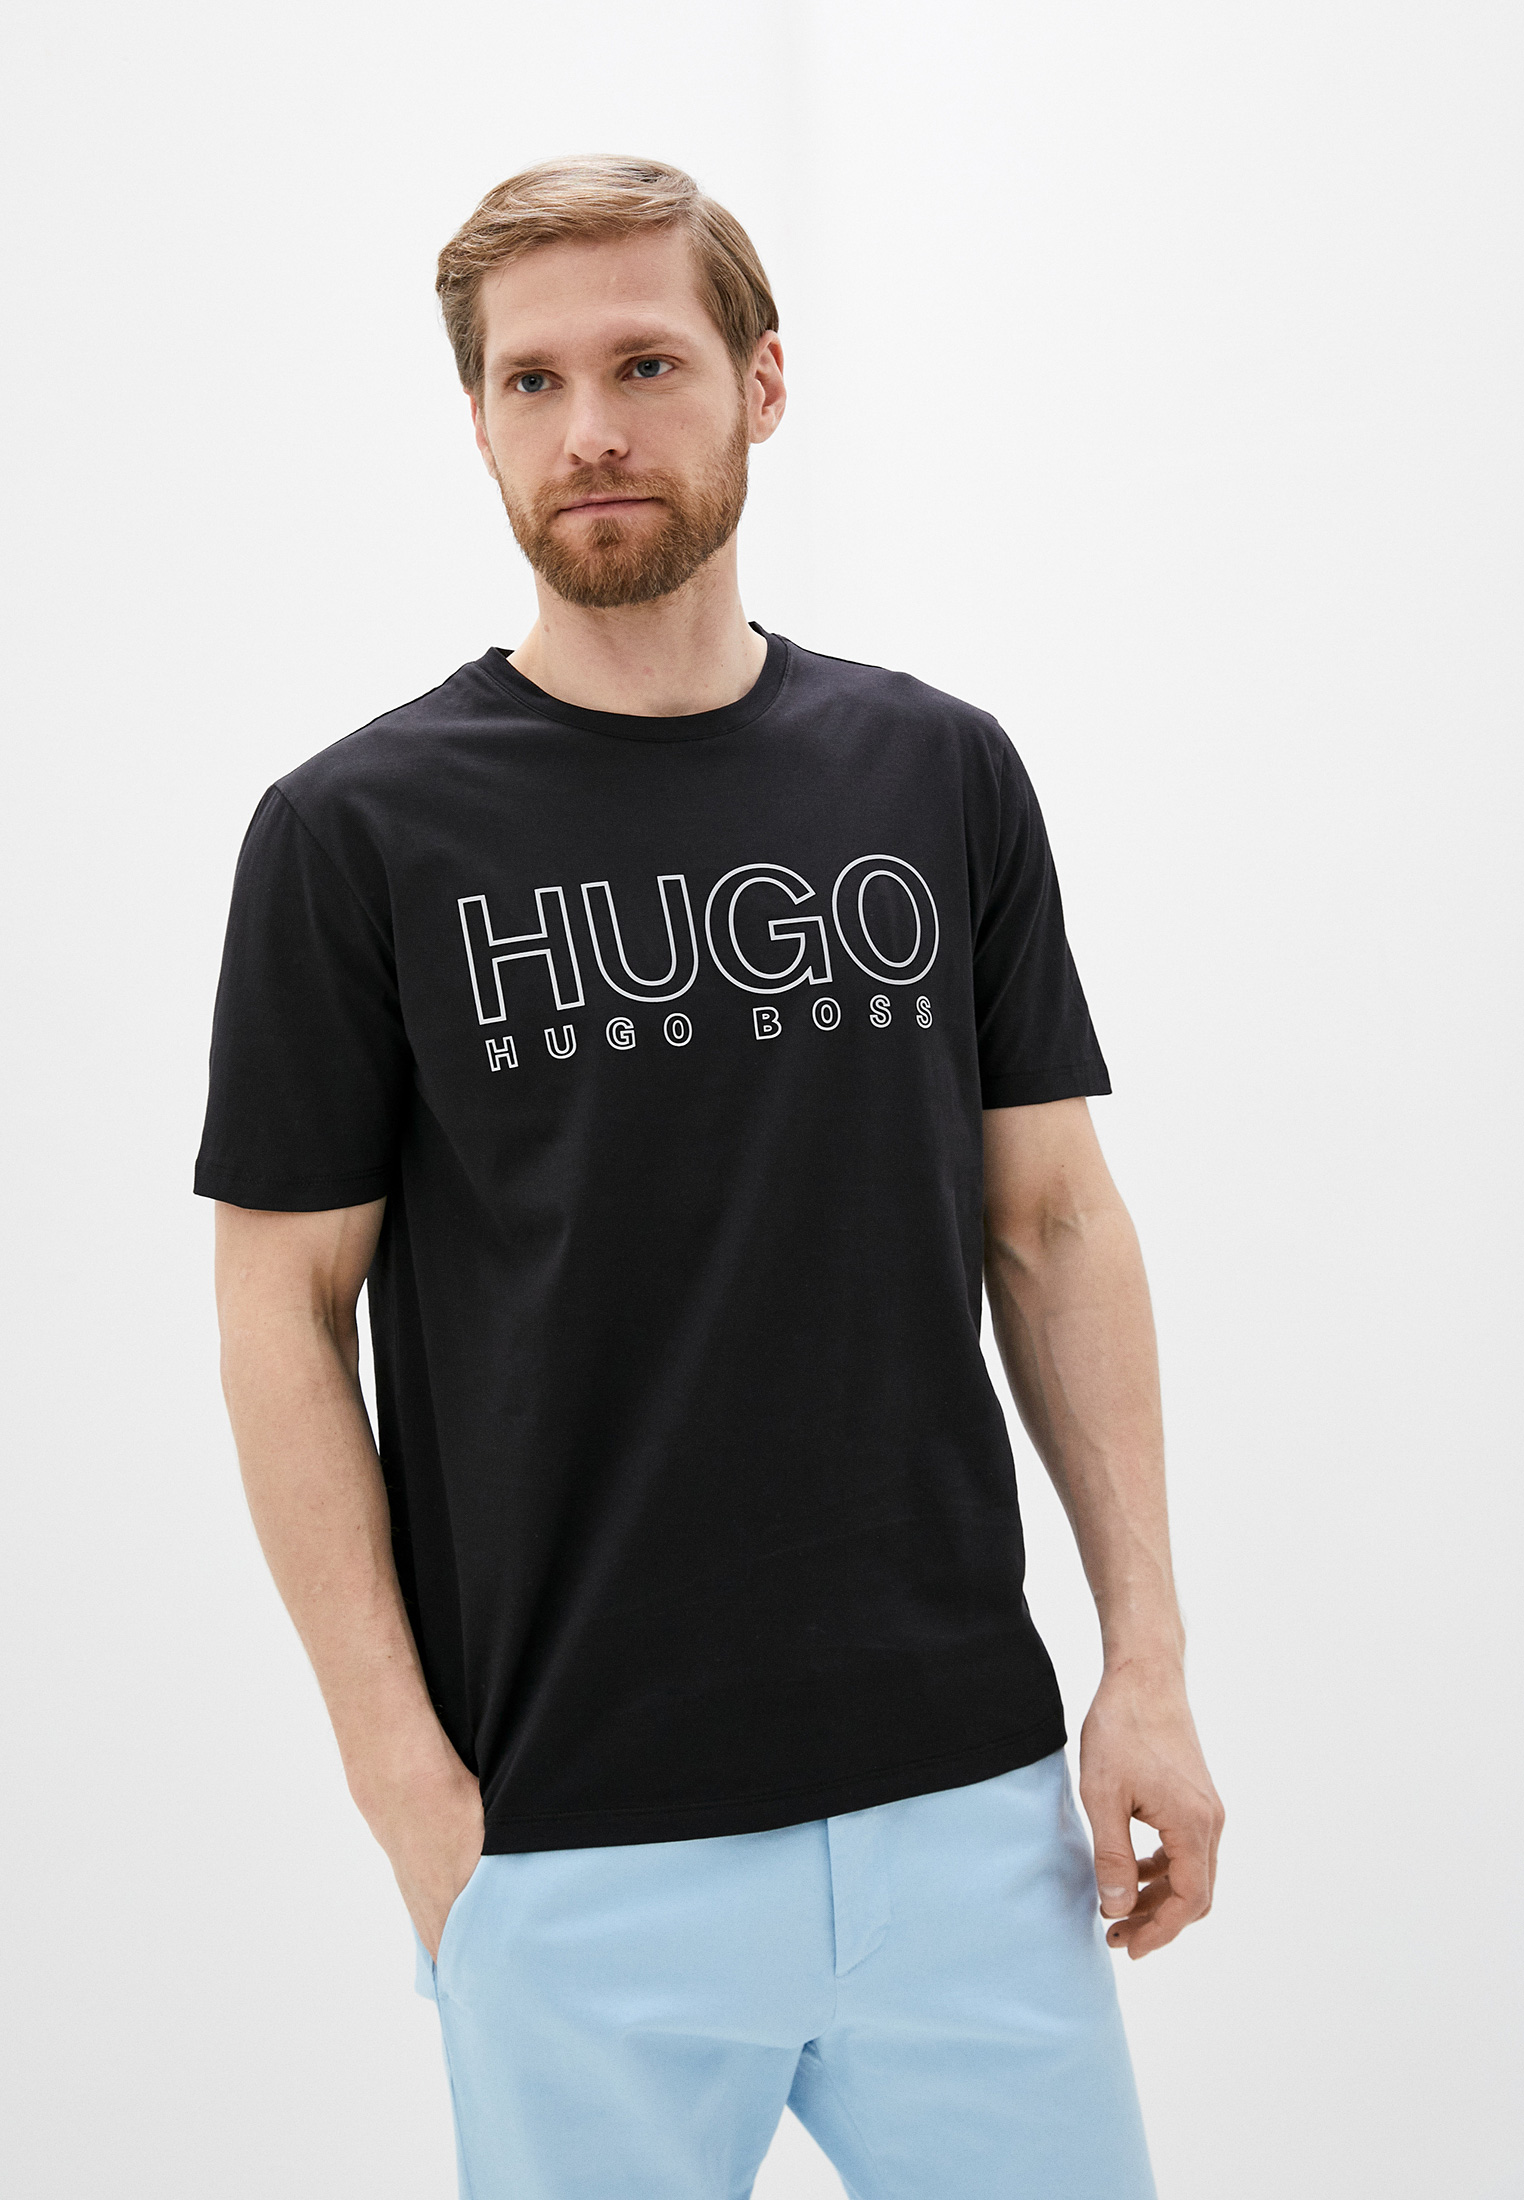 Купить футболку hugo. Футболка Hugo Boss цвет хаки. Футболка Hugo Boss мужская черная. Lamoda футболка Hugo. Футболка Hugo мужская черная.